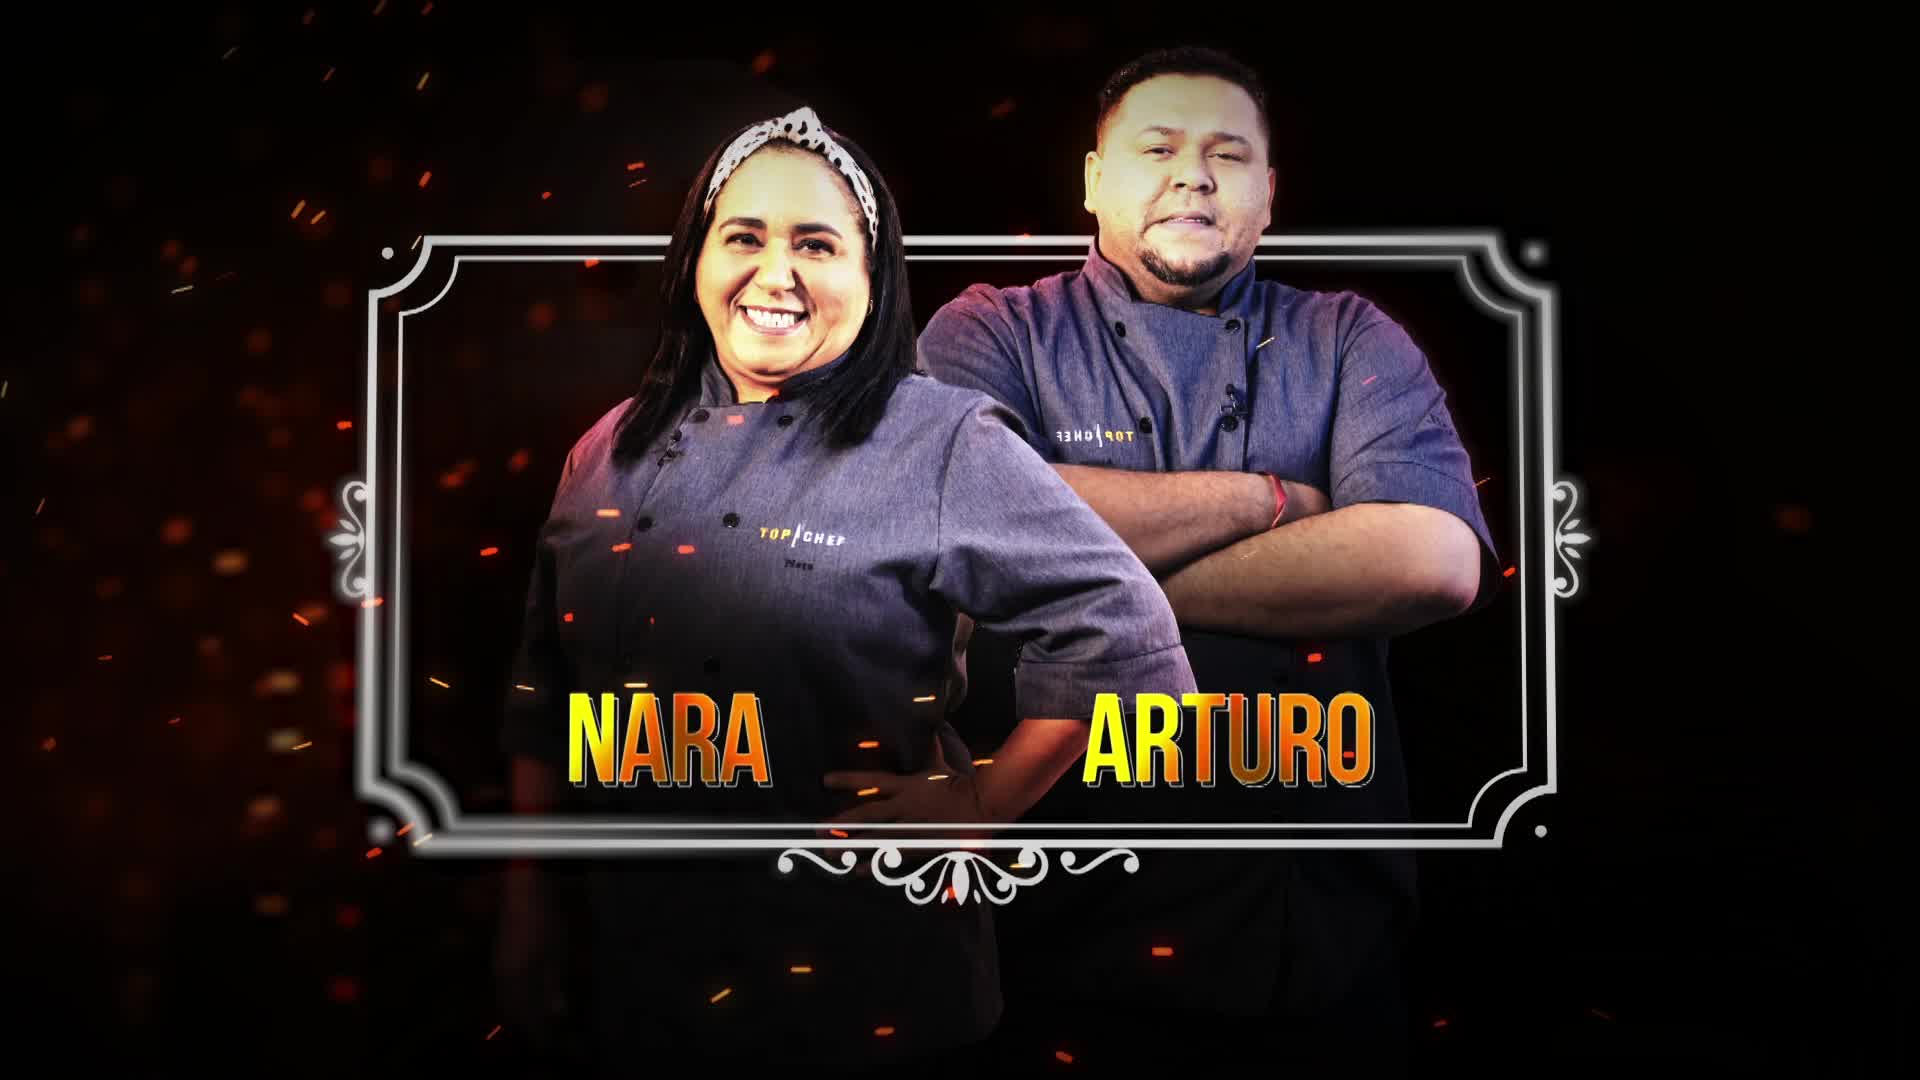 Nara e Arturo vencedores da repescagem! - E12 (promo)